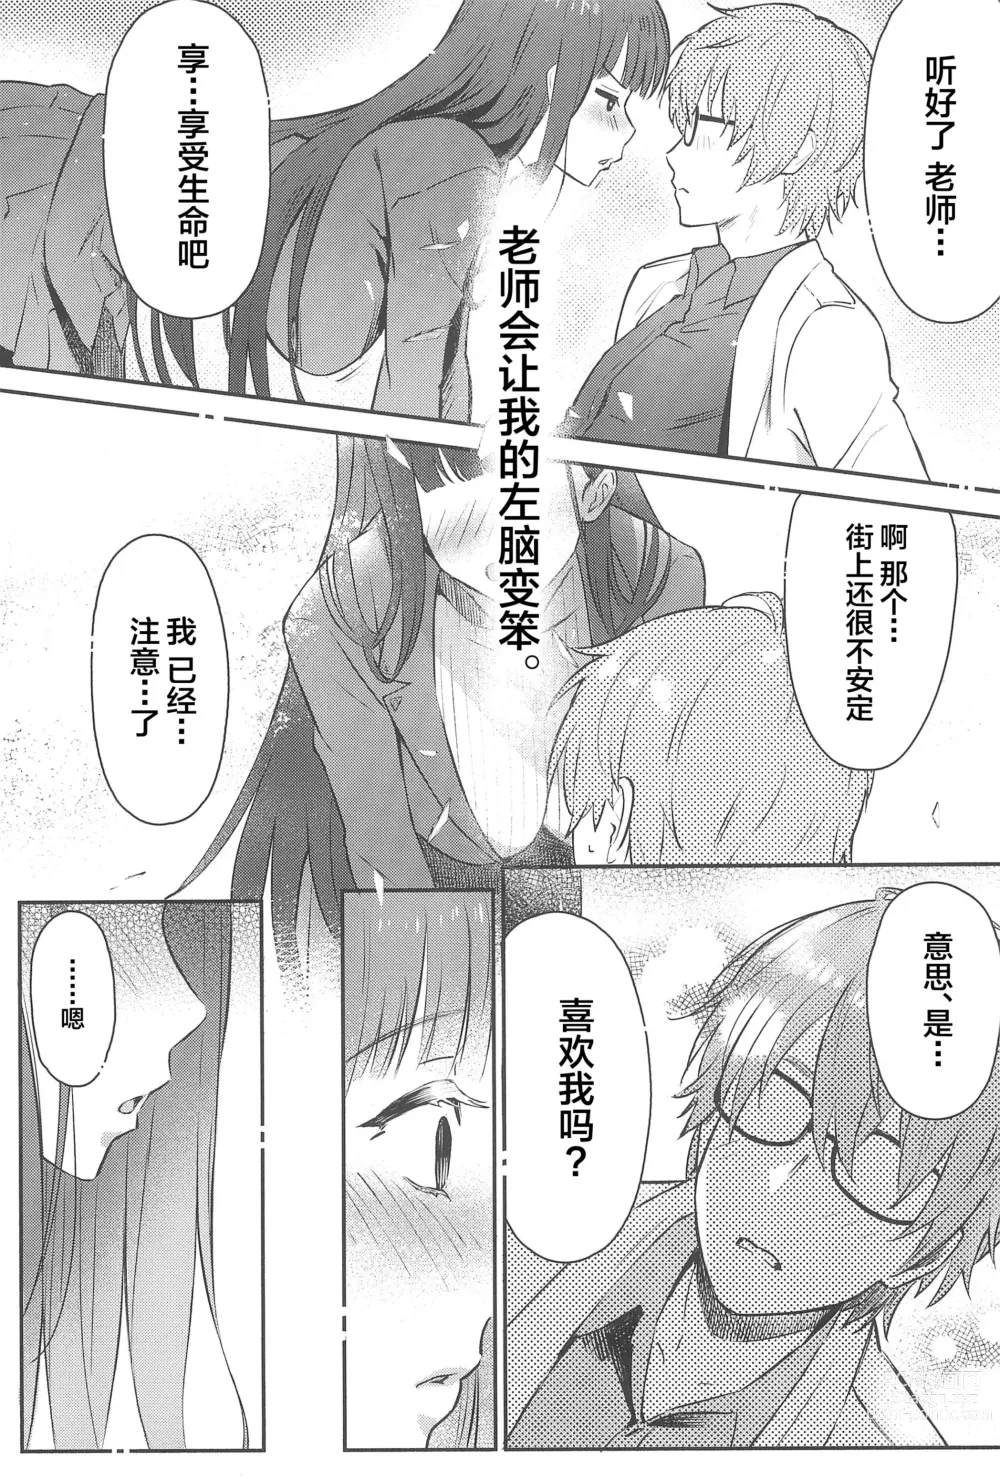 Page 10 of doujinshi Rio-chan wa Otosaretai. - Rio Want To Be Fall in Love